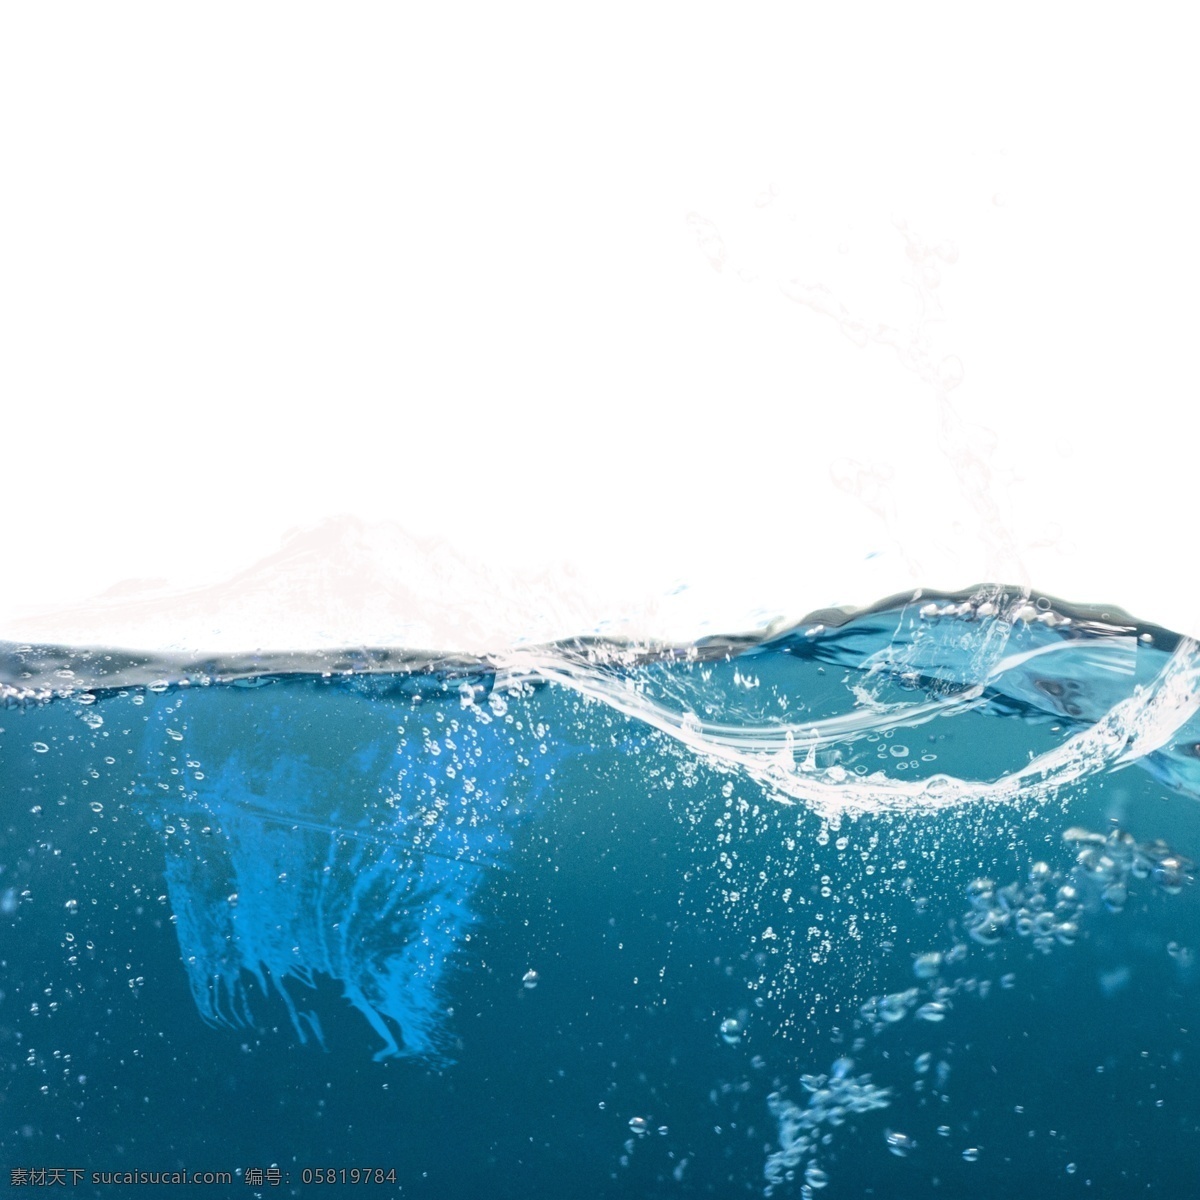 蓝色 透明 水花 水面 元素 动感 晶莹 蓝色水花 水珠 水滴 水浪